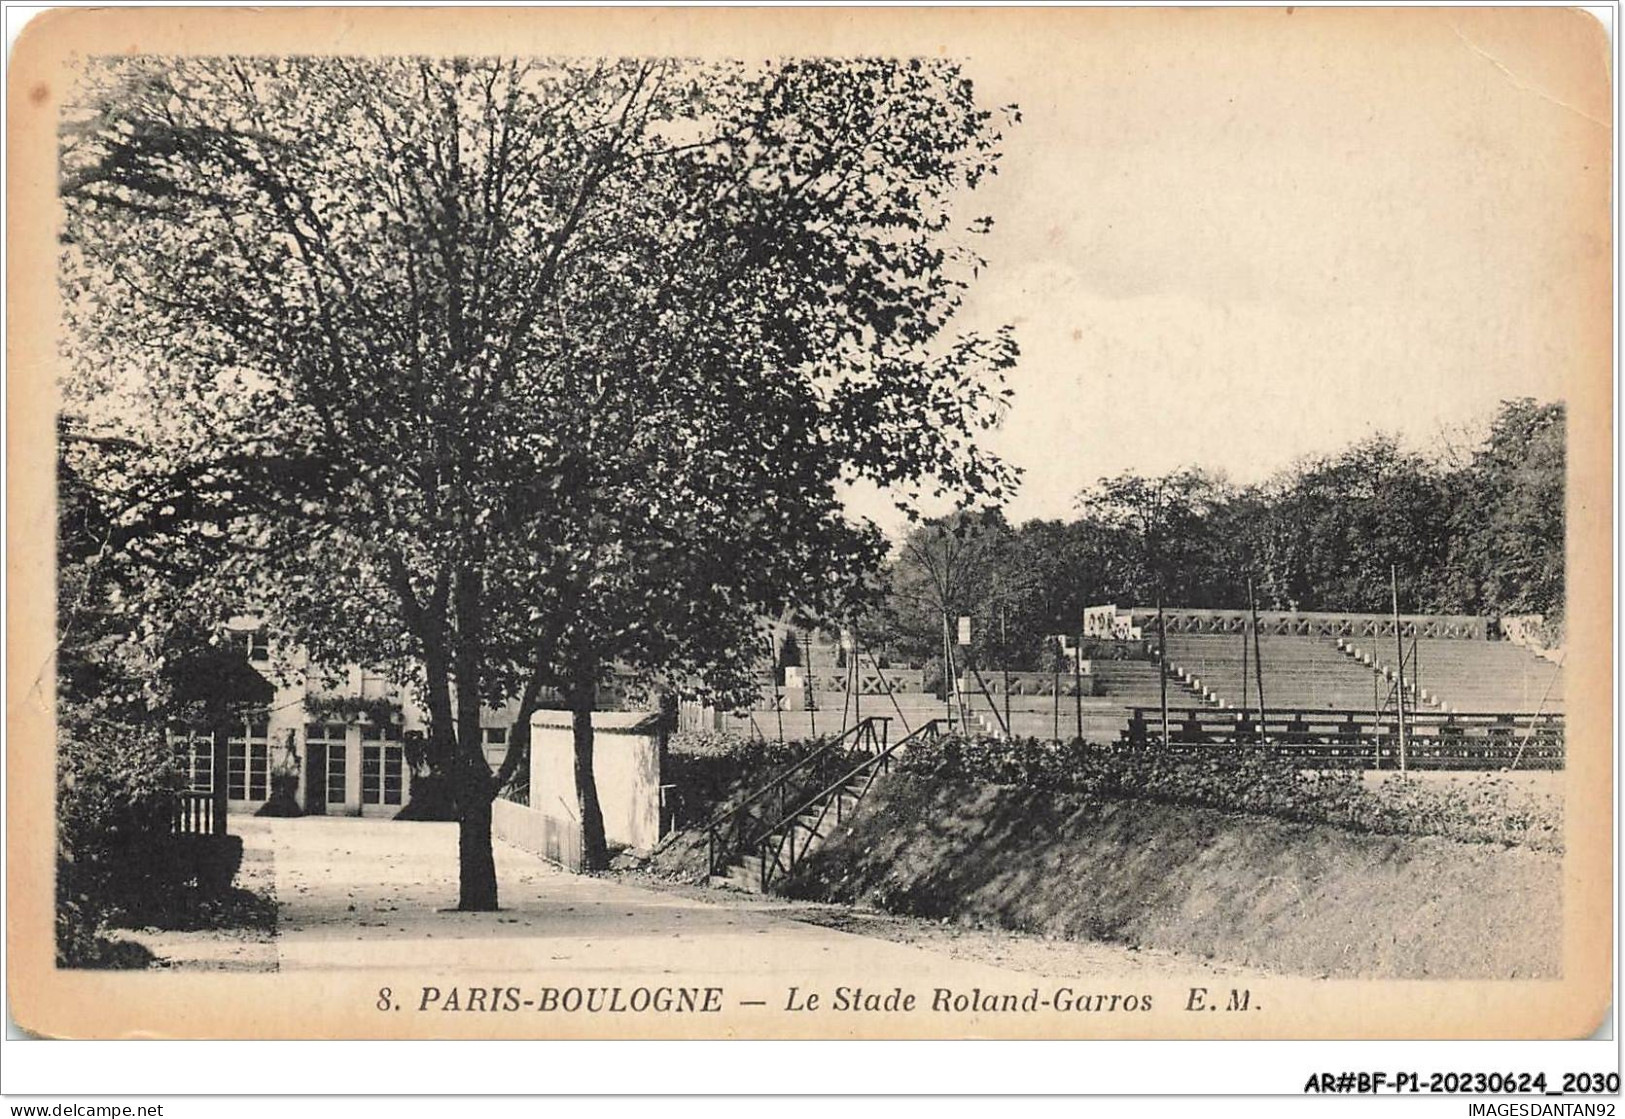 AR#BFP1-92-1017 - PARIS-BOULOGNE - Le Stade Roland-Garros - NÂ°2 - Boulogne Billancourt